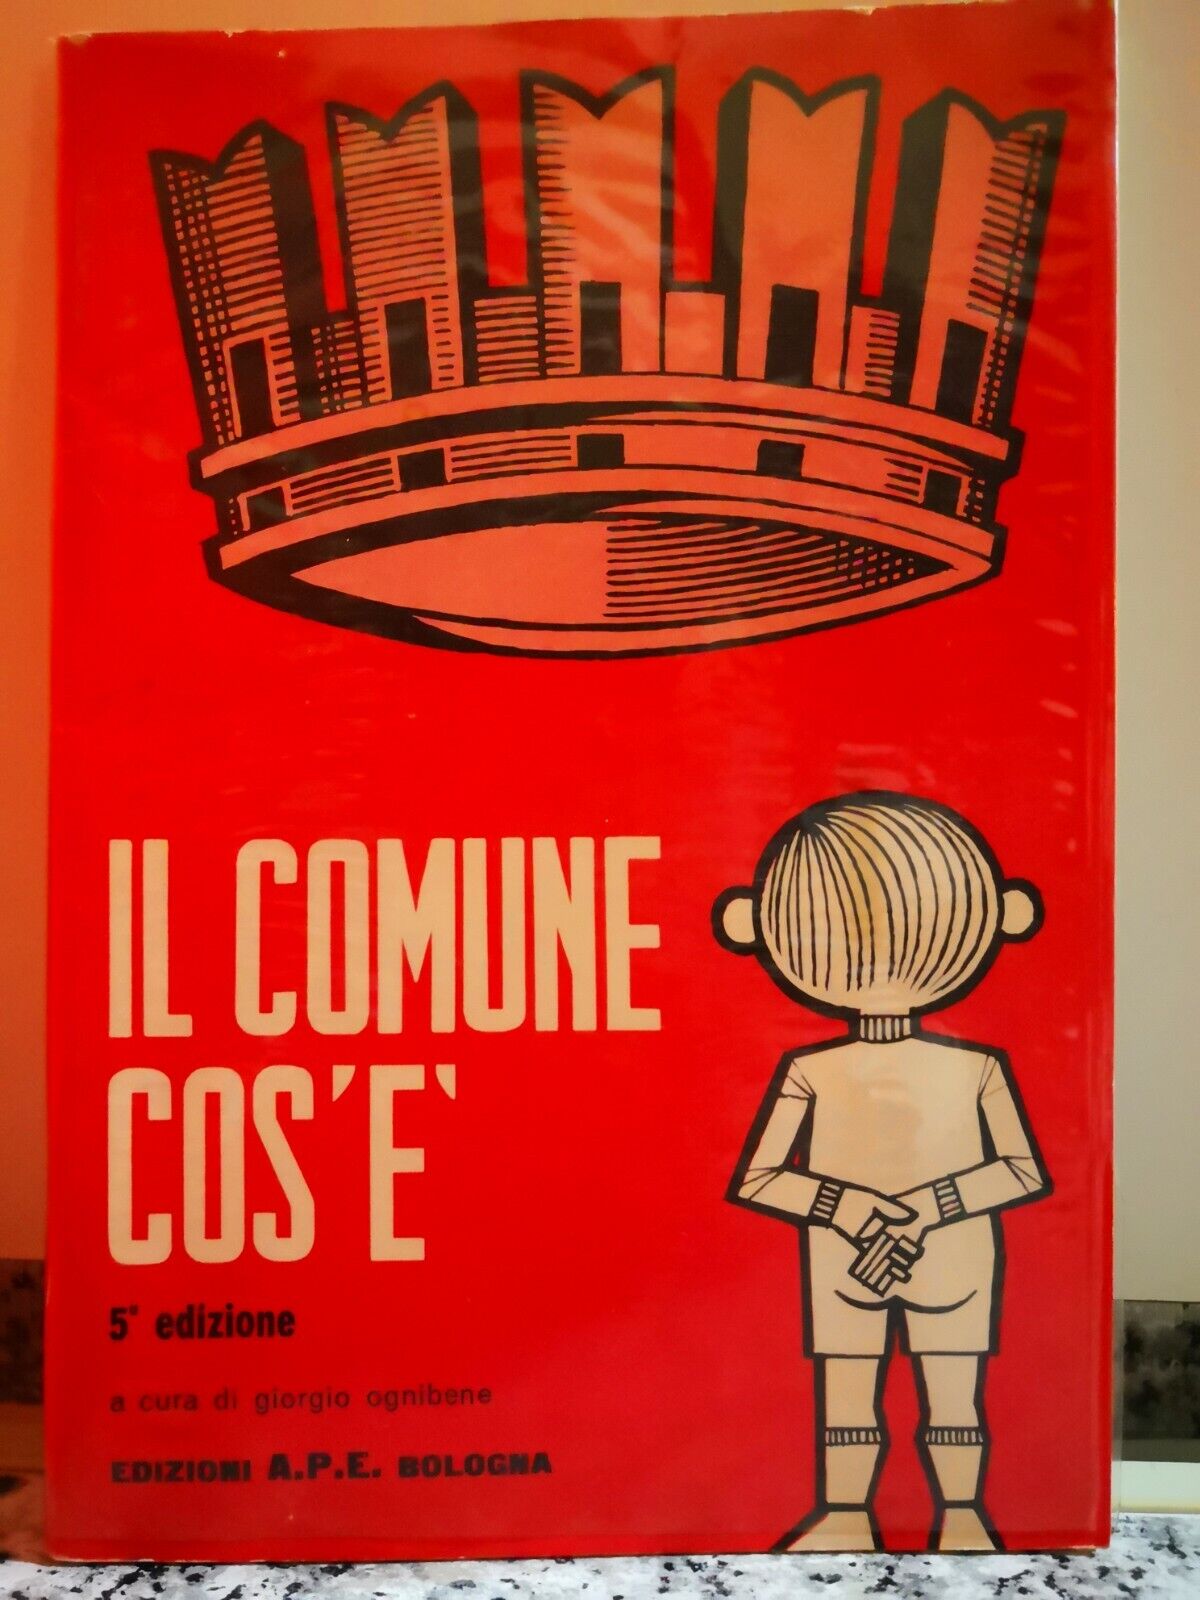  Il Comune cos?? 5?edizione  di A.a.v.v,  1973,  A.p.e. Bologna-F